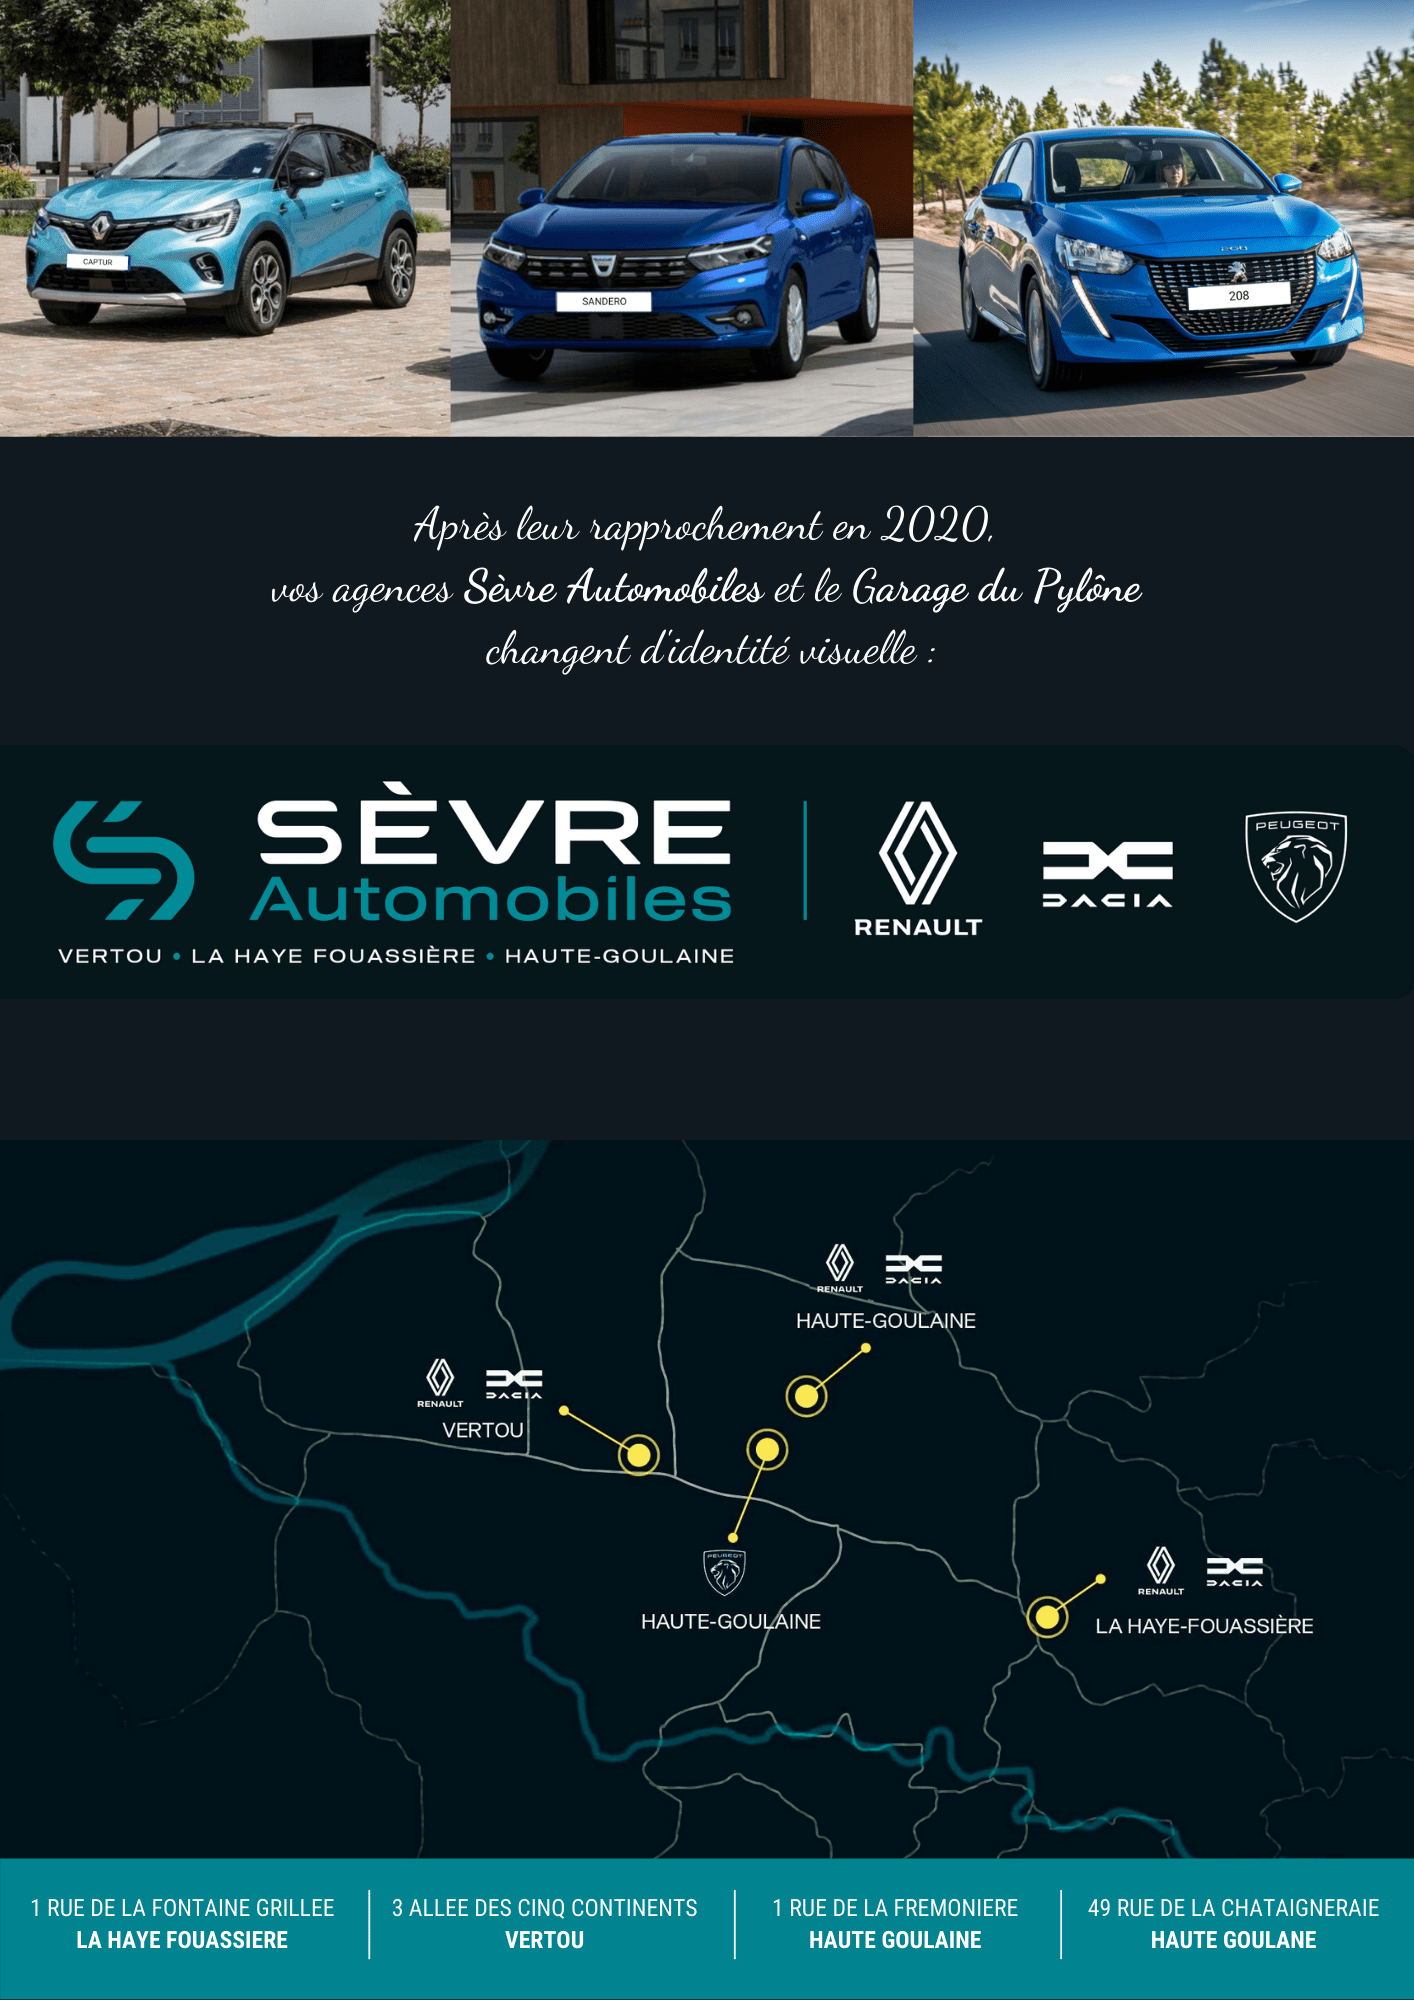 Sèvre Automobile